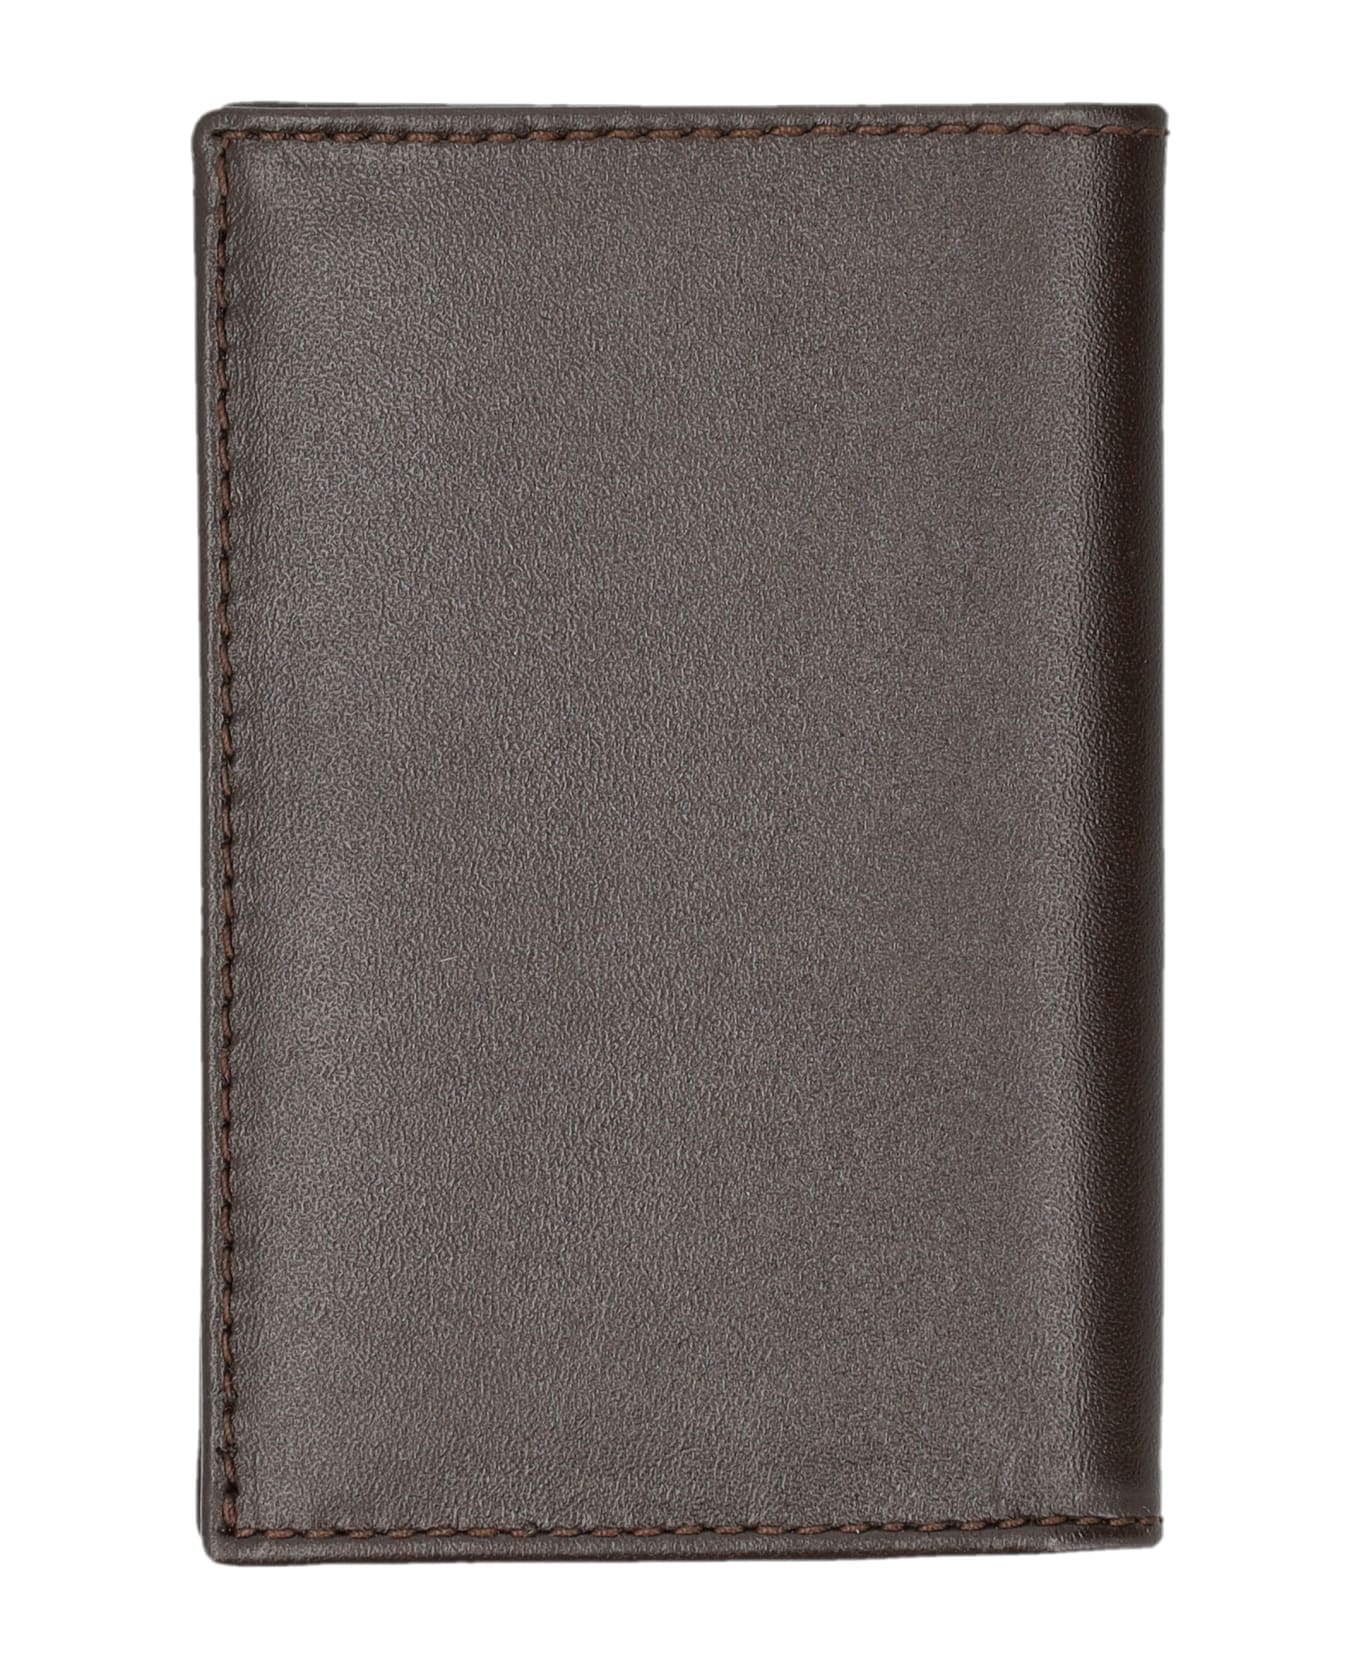 Comme des Garçons Wallet Classic Bifold Wallet - BROWN 財布